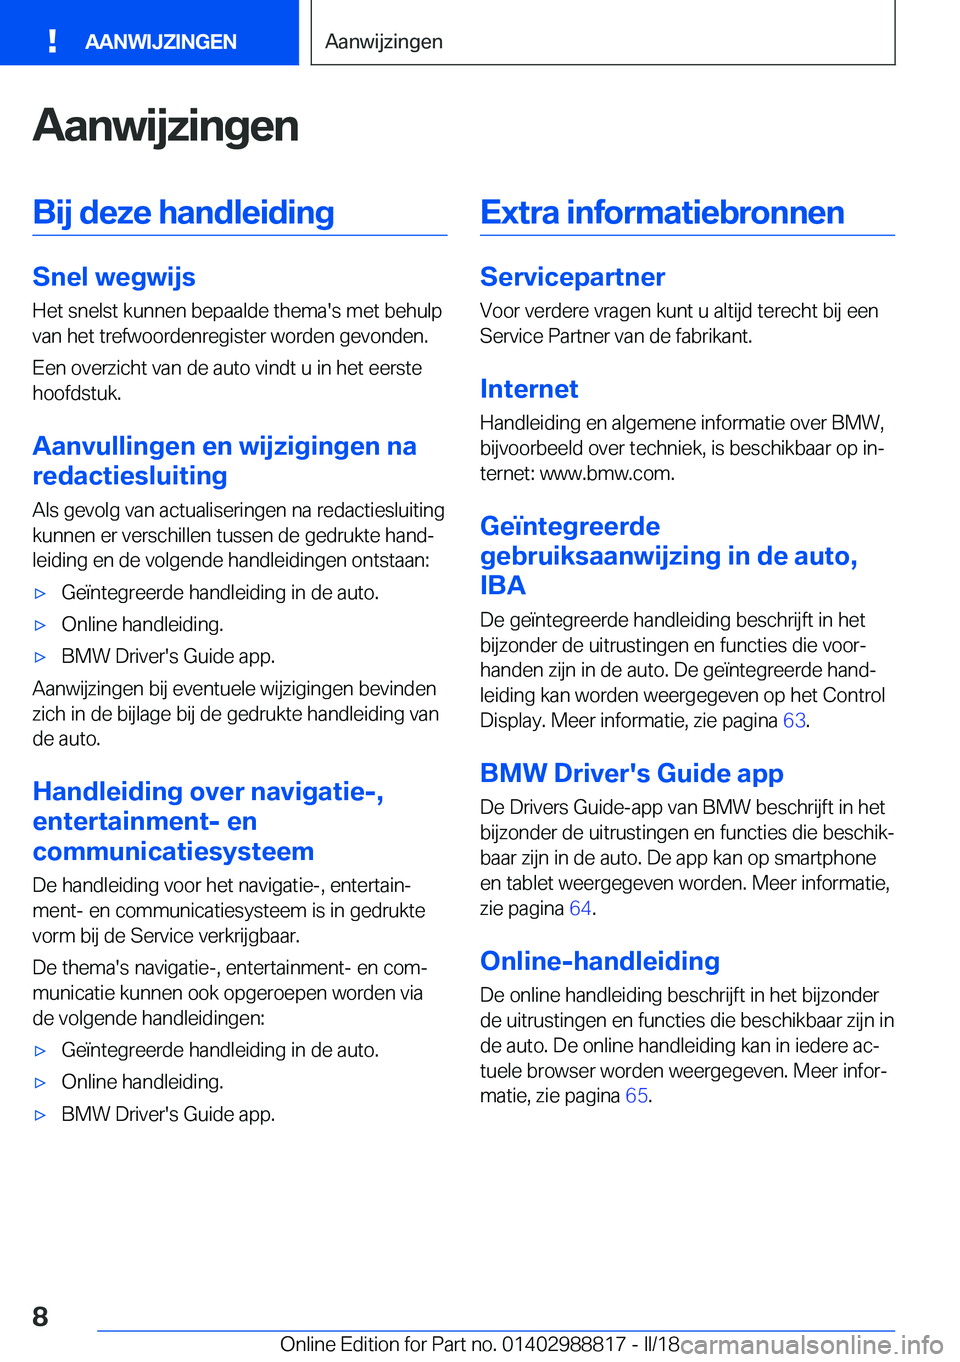 BMW X5 2018  Instructieboekjes (in Dutch) �A�a�n�w�i�j�z�i�n�g�e�n�B�i�j��d�e�z�e��h�a�n�d�l�e�i�d�i�n�g
�S�n�e�l��w�e�g�w�i�j�s
�H�e�t� �s�n�e�l�s�t� �k�u�n�n�e�n� �b�e�p�a�a�l�d�e� �t�h�e�m�a�'�s� �m�e�t� �b�e�h�u�l�p
�v�a�n� �h�e�t�